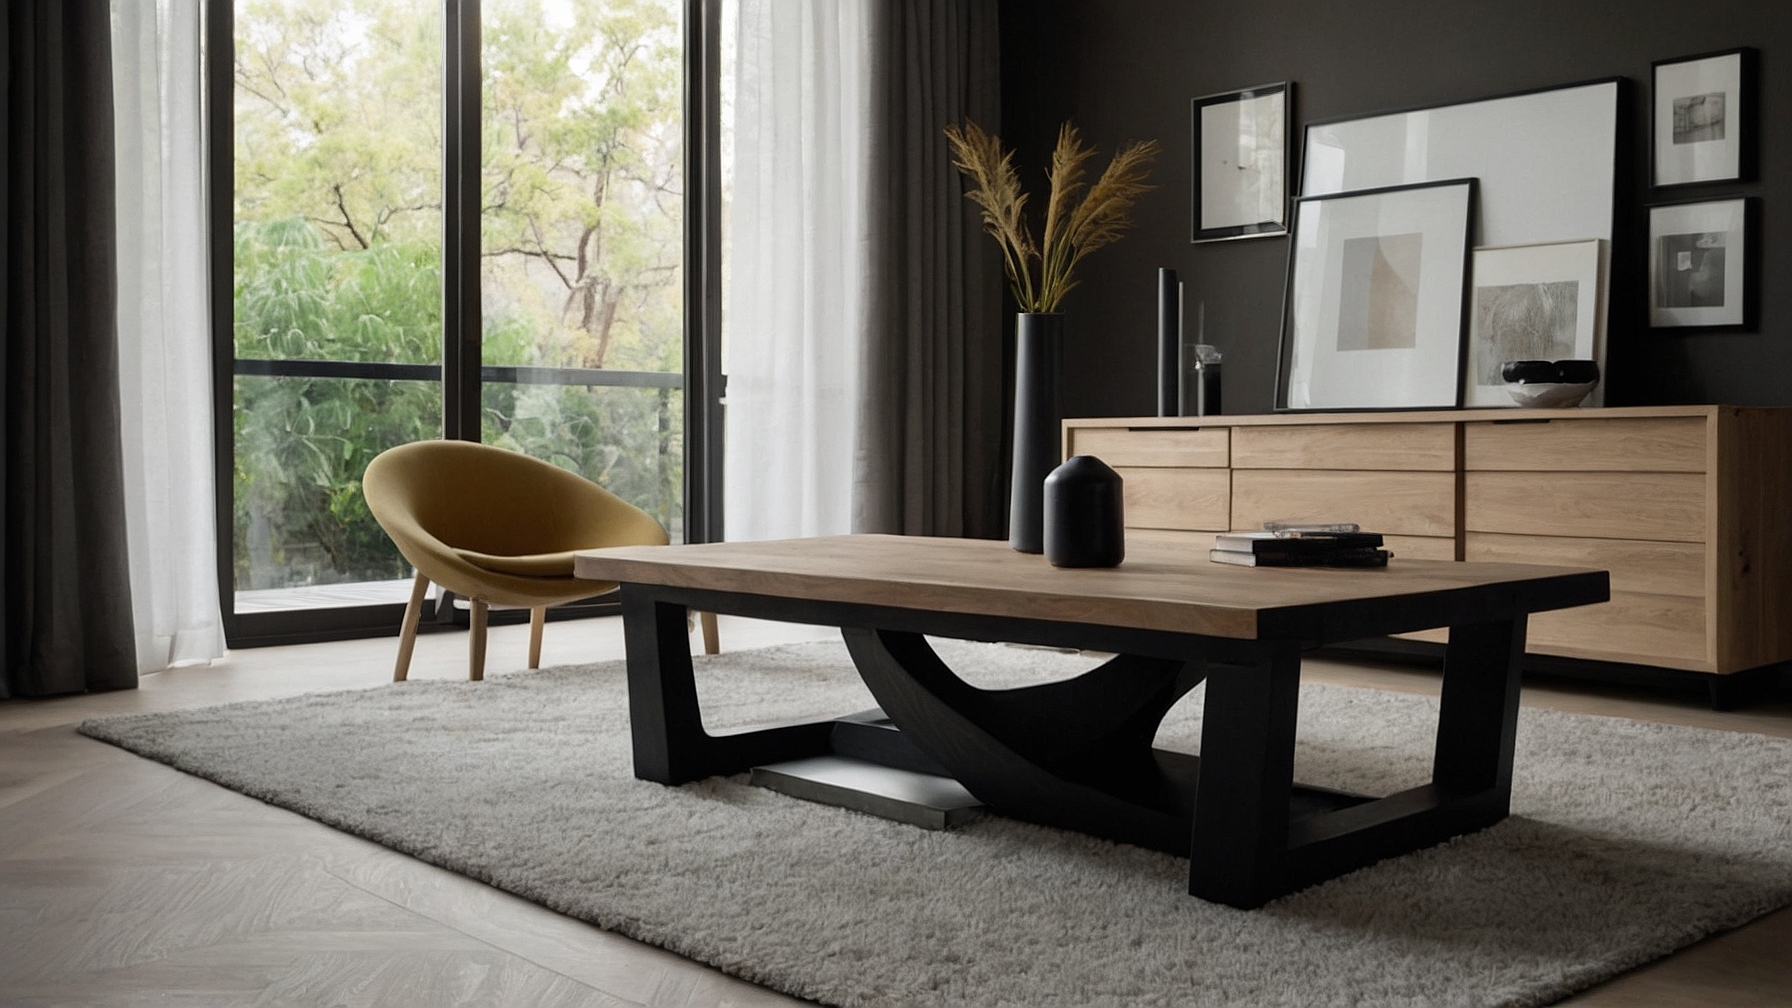 Default Minimalist house Wood Coffee Table Modern Style Timel 0 1